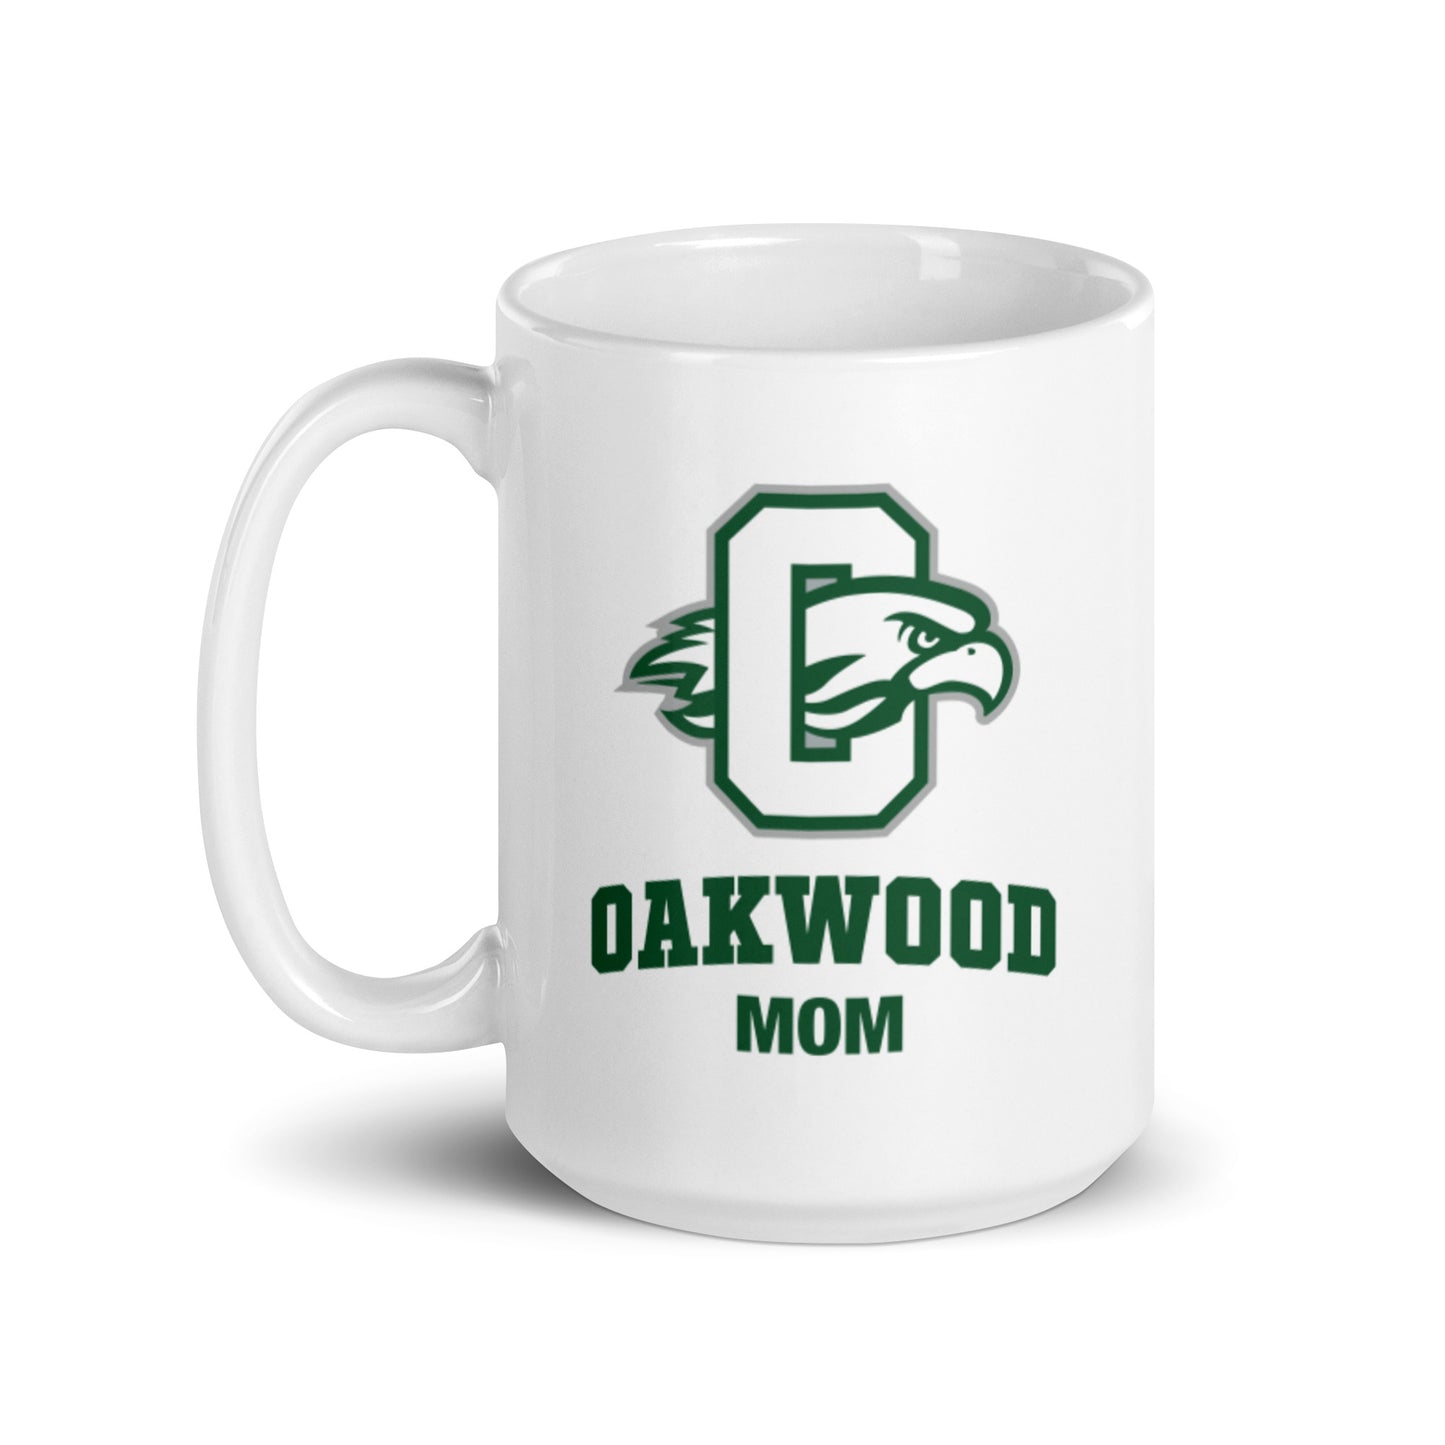 Oakwood Mom Mug